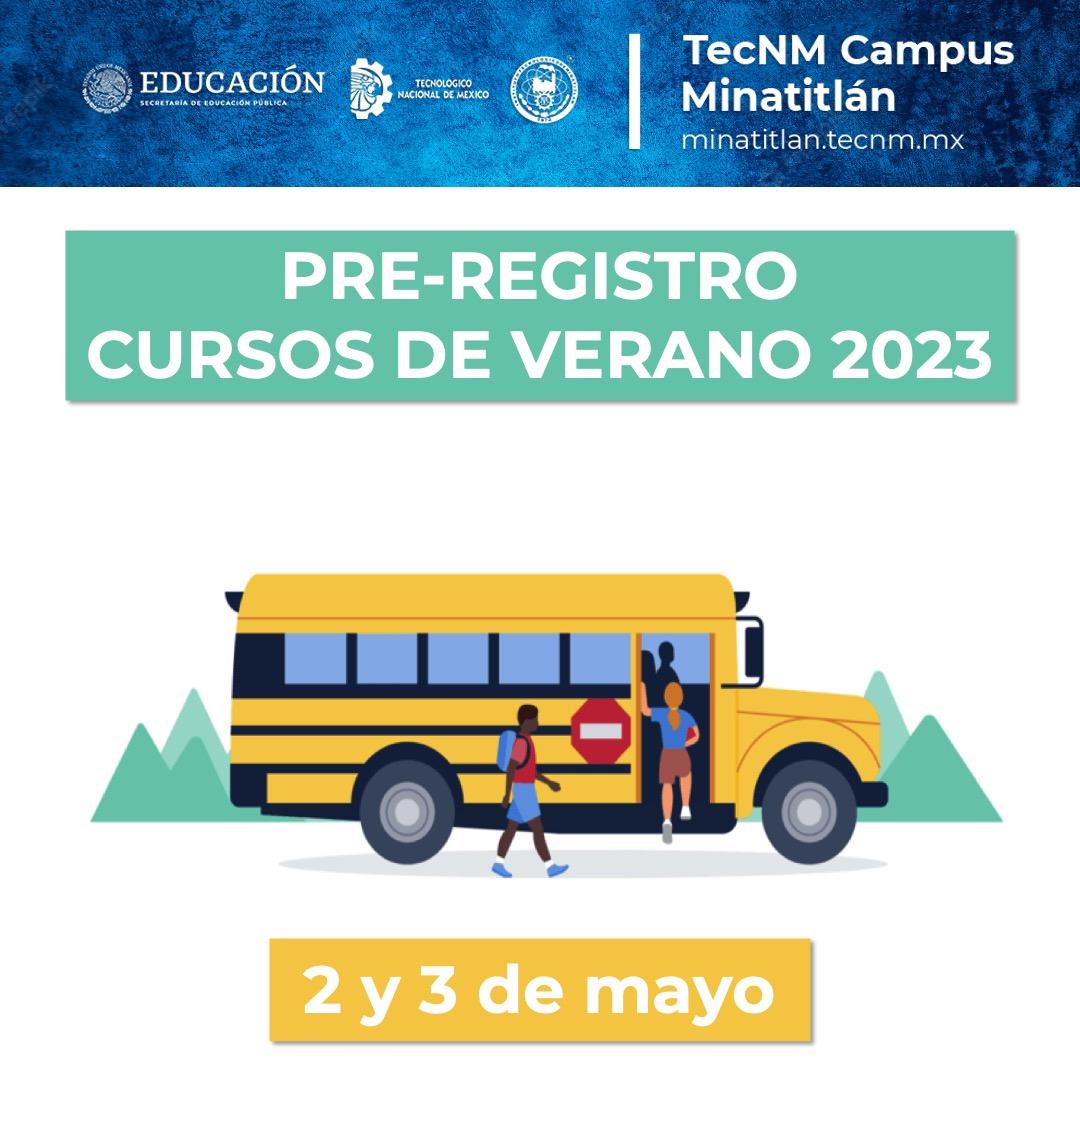 PRE-REGISTRO CURSOS DE VERANO 2023